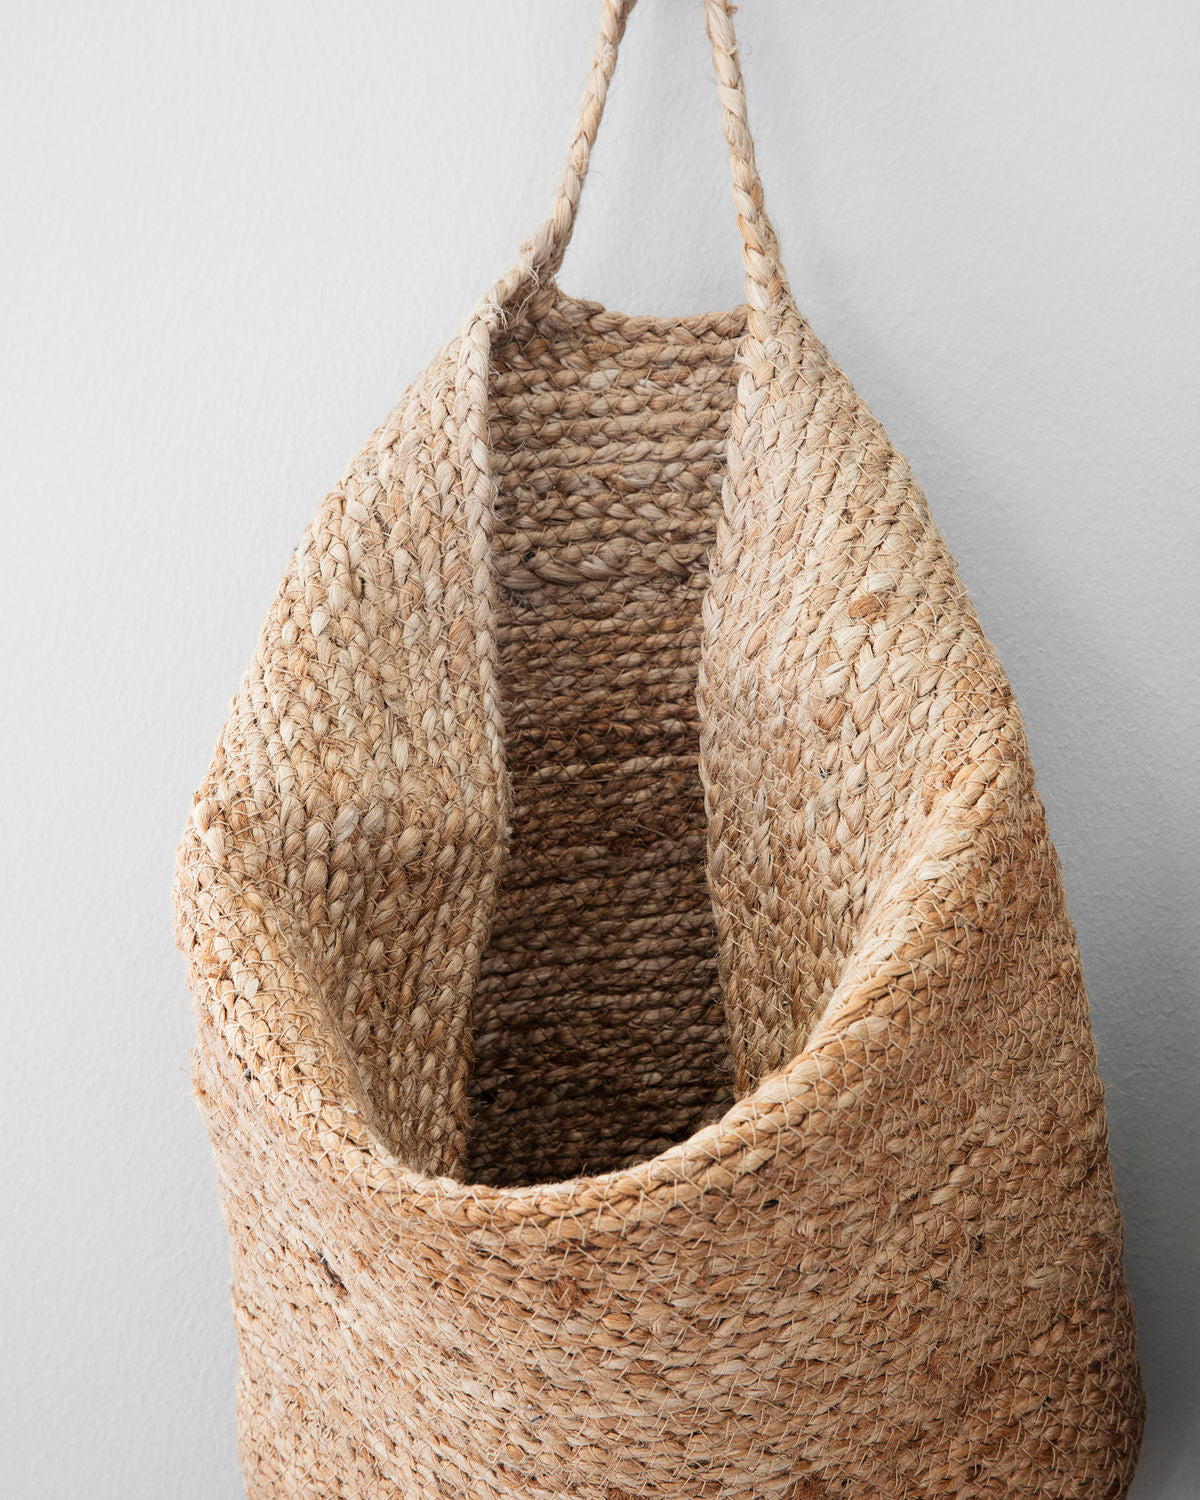 Basket for Hanging- Mira 48cm